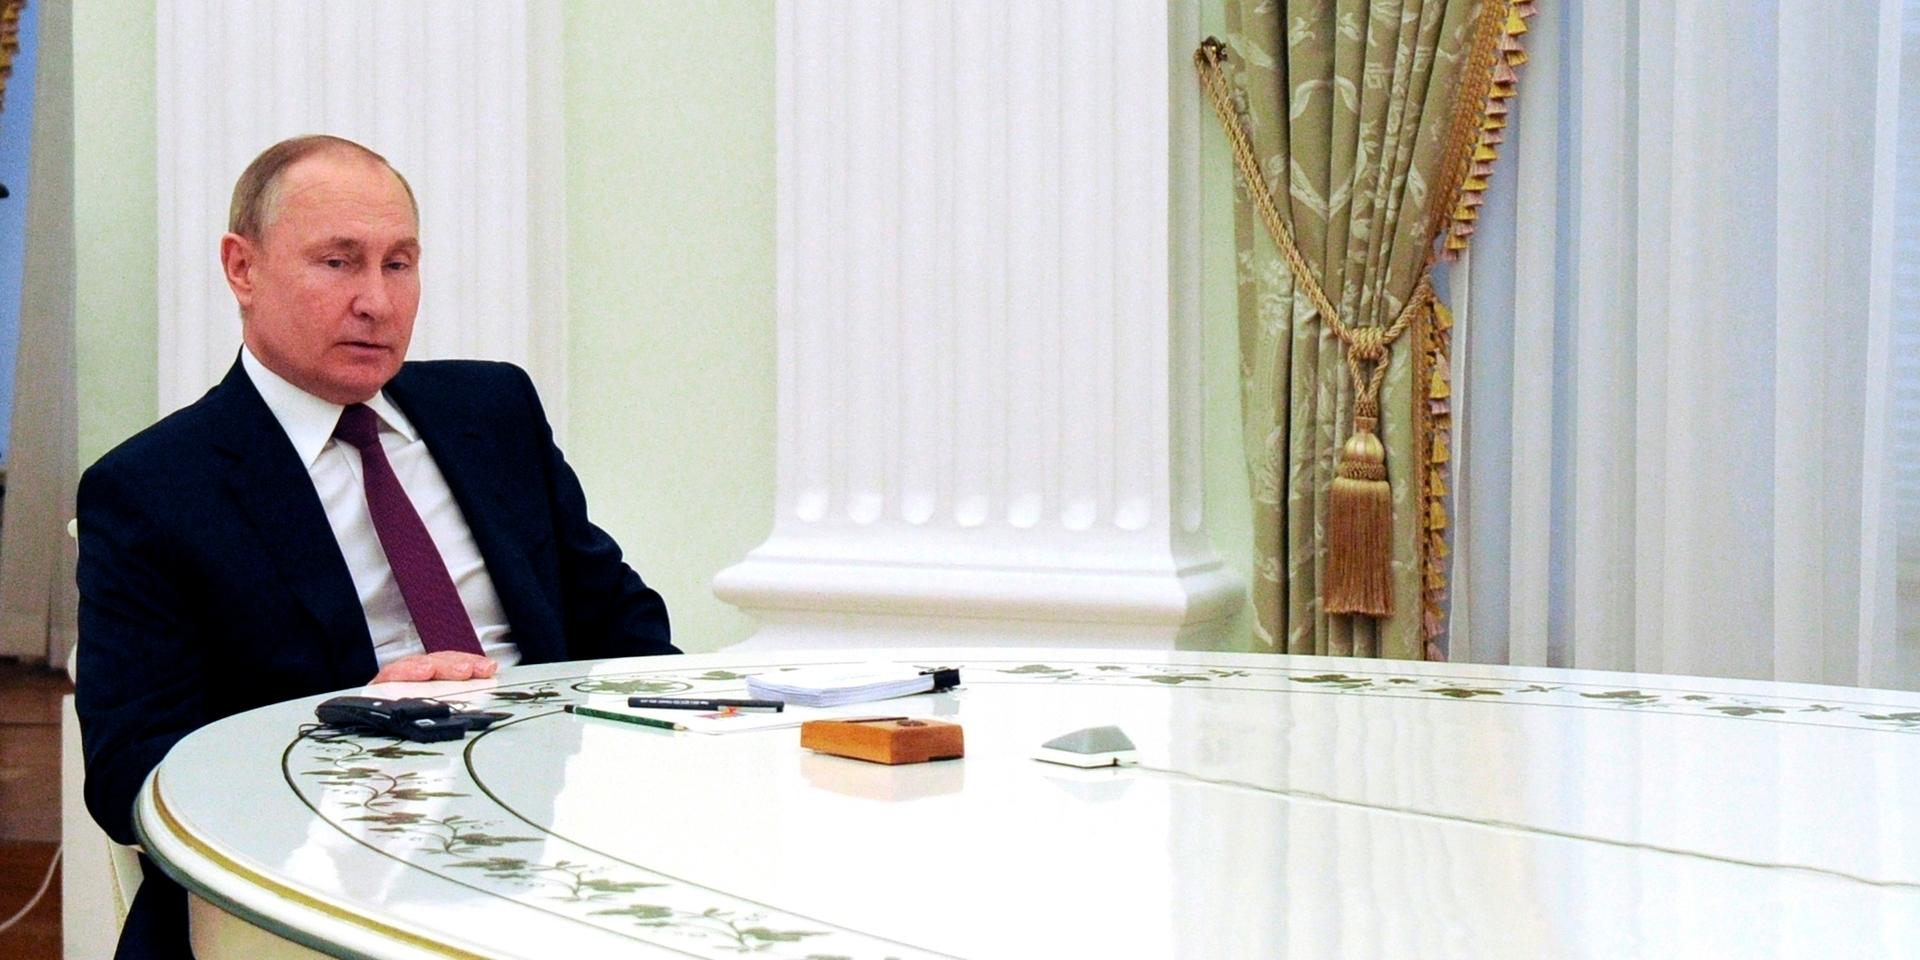 Visuell diplomati. Putins långa bord markerar distans till ledare på besök. 